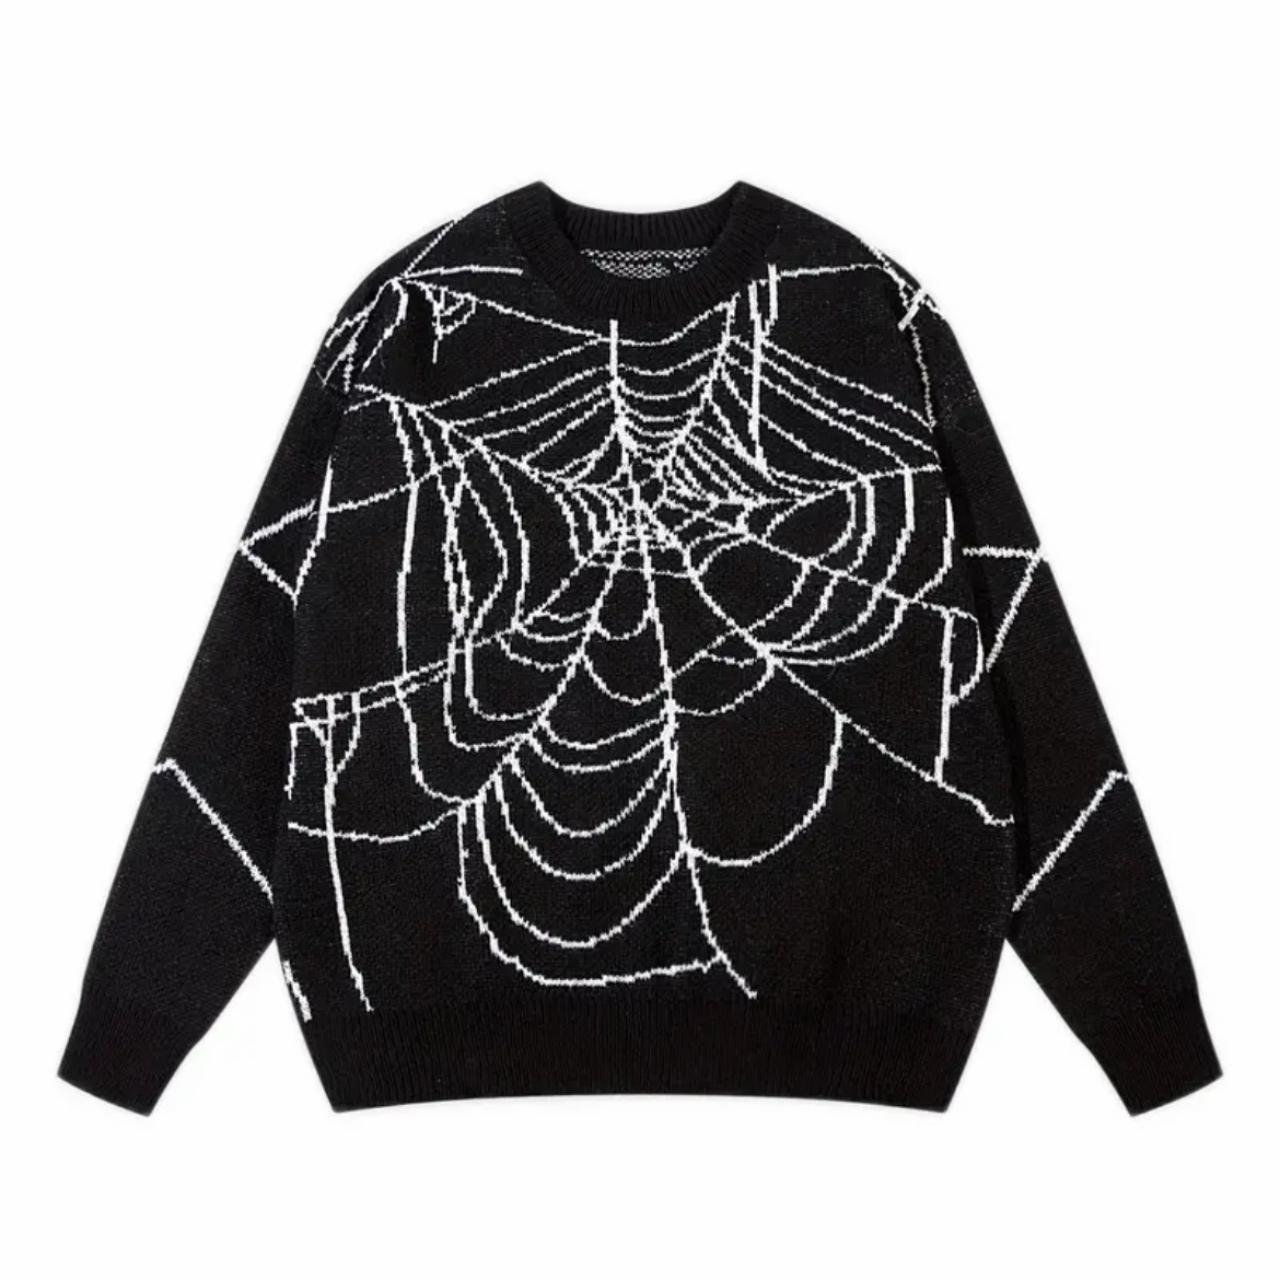 Y2k Punk Grunge 2000s style knitted spider web... - Depop